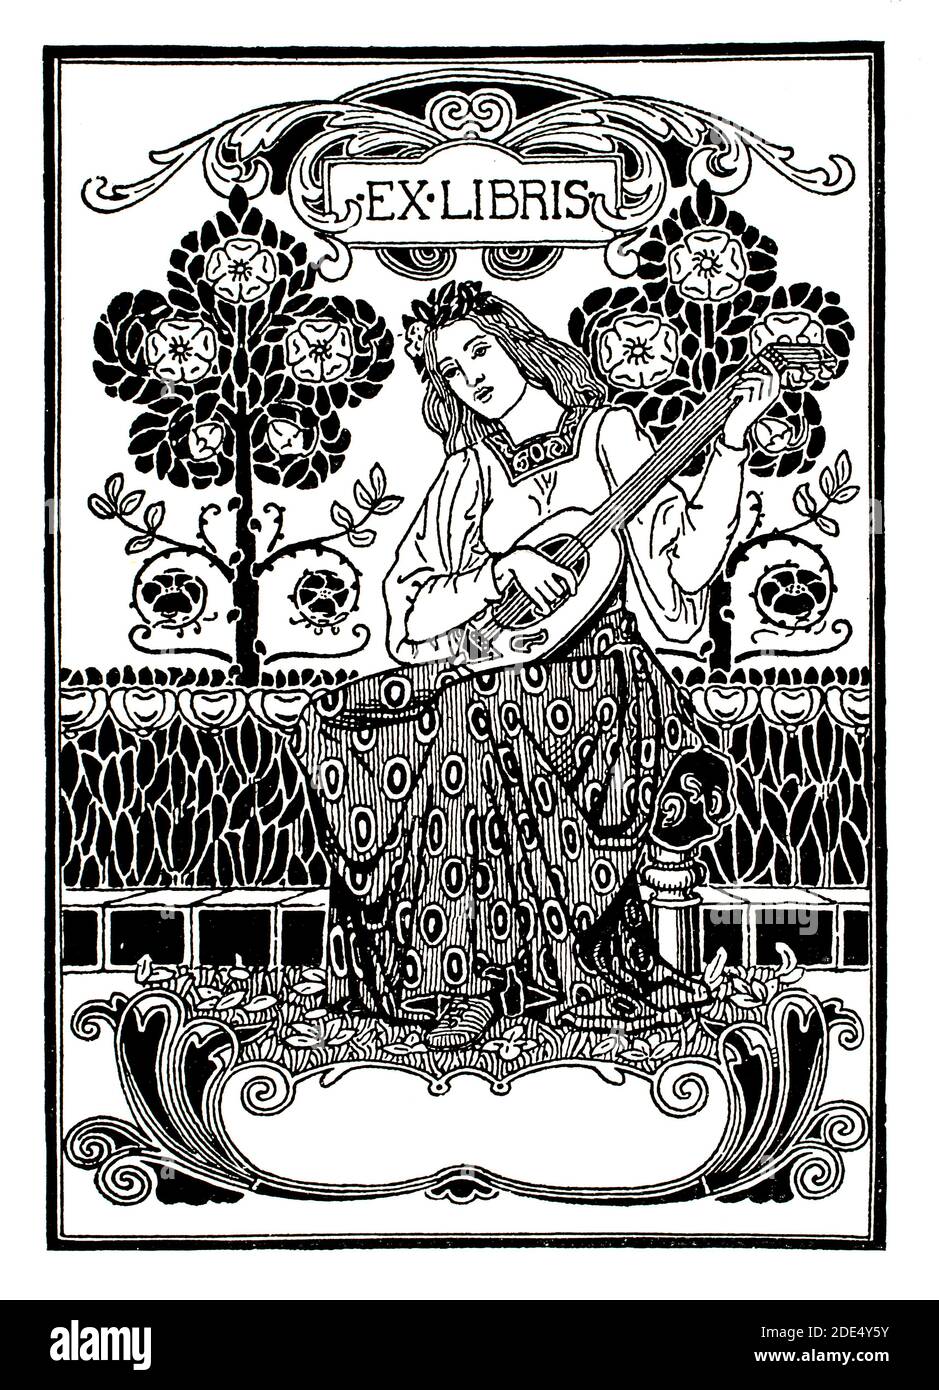 Frau spielt Laute Bücherregal Design, Linienillustration von Arthur Maude aus dem Jahr 1896 das Studio ein Illustriertes Magazin für bildende und angewandte Kunst Stockfoto